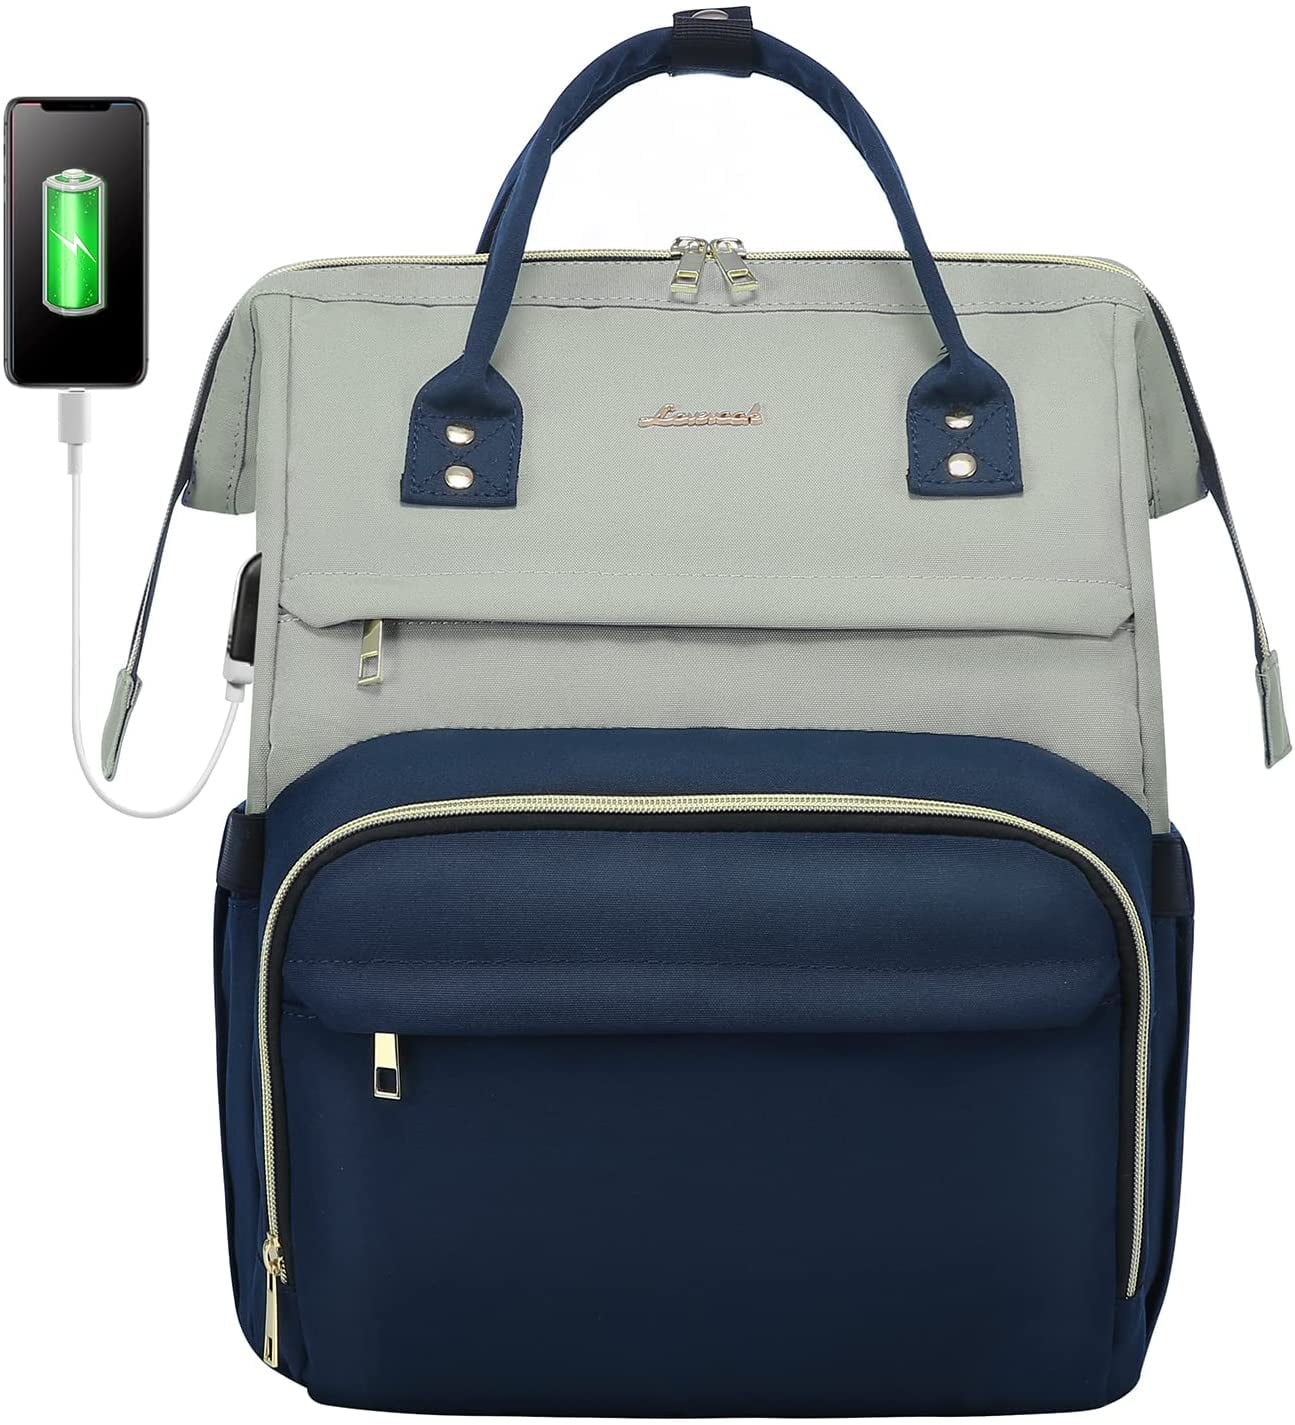 LOVEVOOK Laptop Bag,15.6 Inch Laptop Case for Women Men Slim Computer Bag for Work Business Travel 